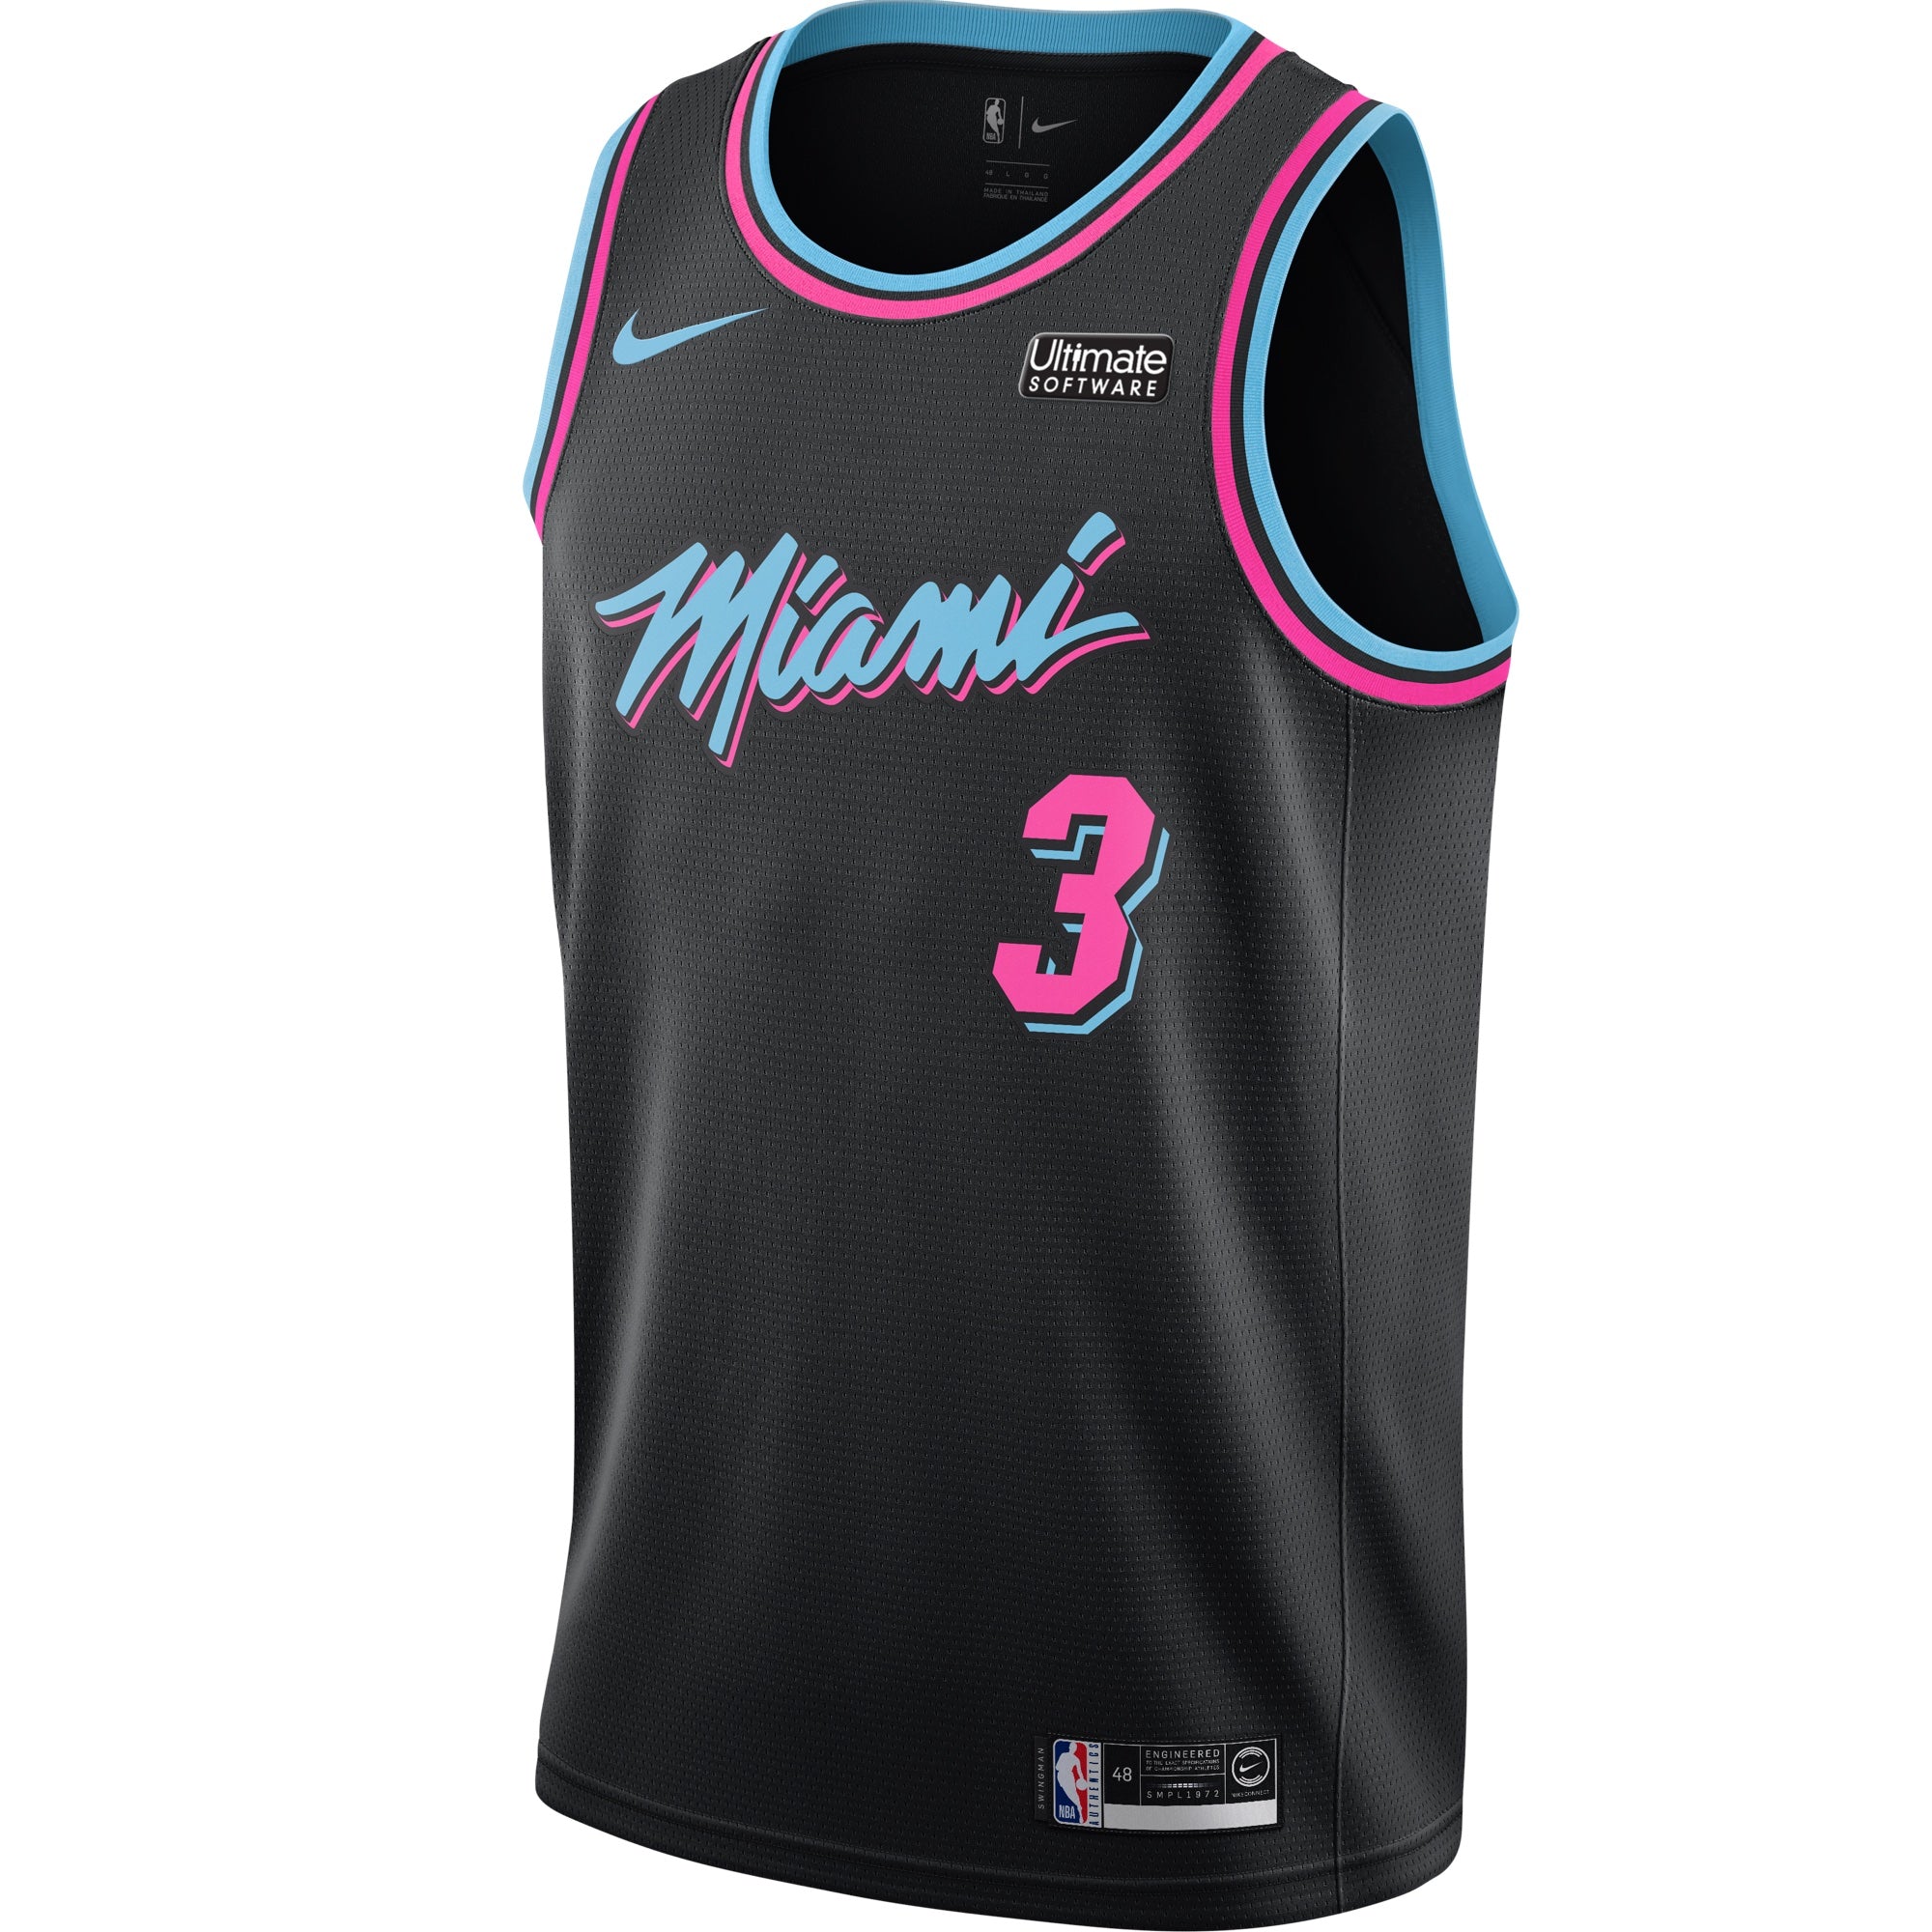 Miami Heat Vice Versa | lupon.gov.ph